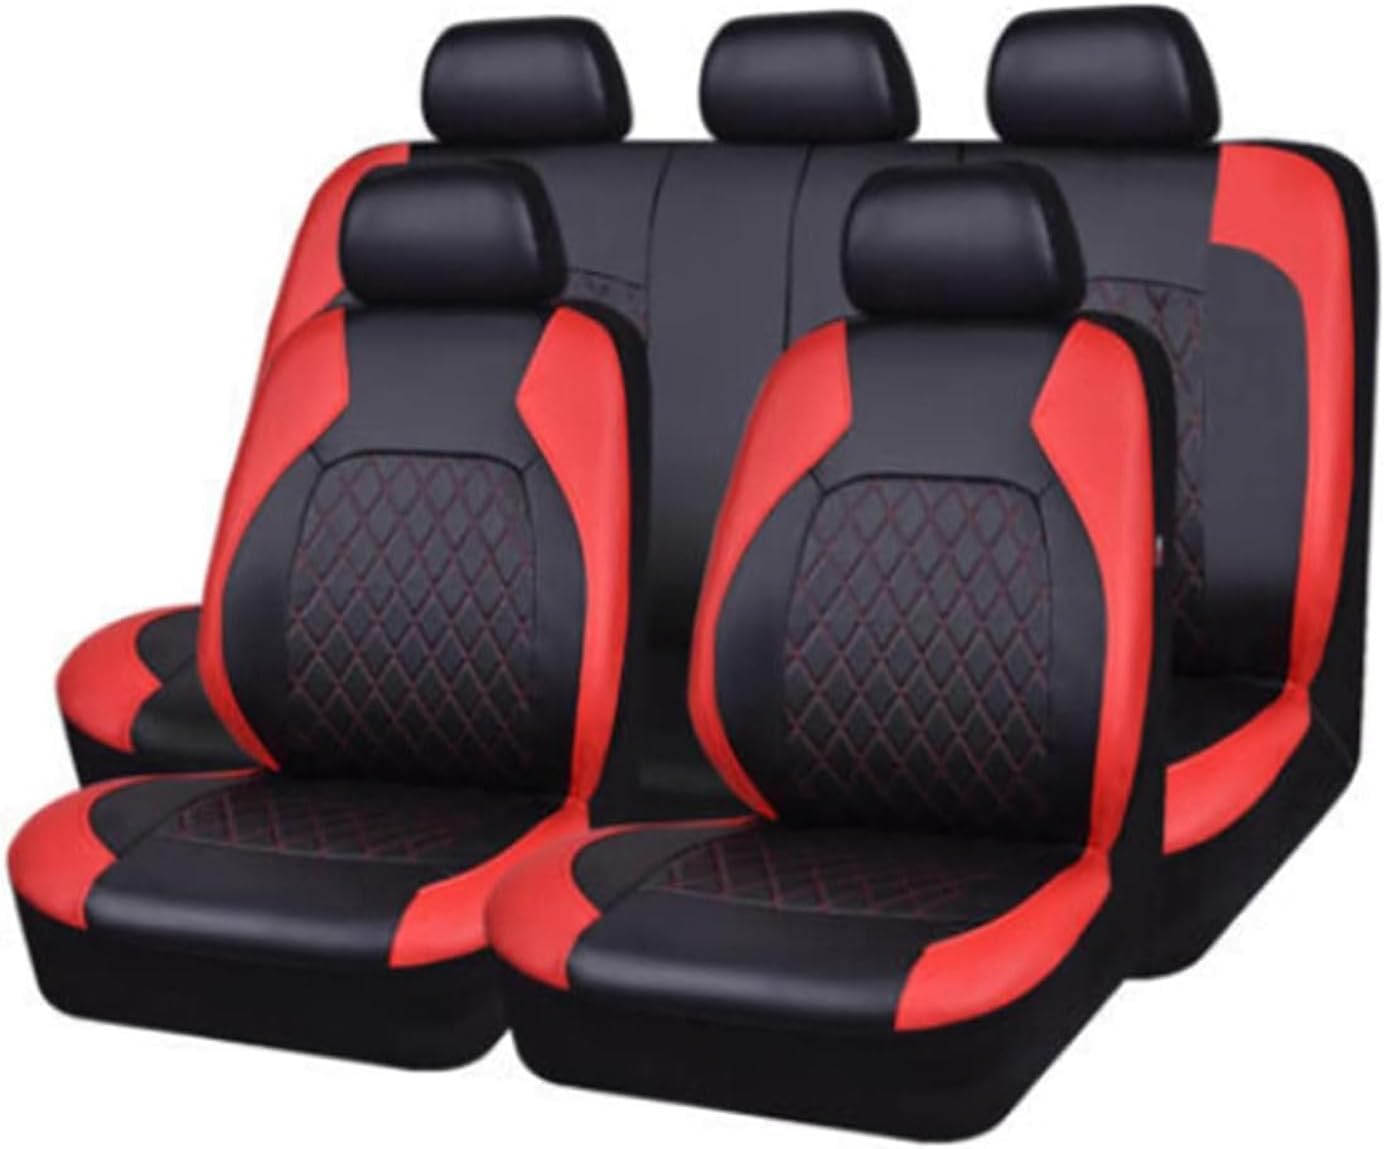 Auto Leder Sitzbezüge für Toyota Corolla Hybrid 2000-2019 2020 2021 2022 2023 5 Seats, 9 Stück Allwetter rutschfest Wasserdicht Atmungsaktiv Schonbezug Set Sitzkissenschutz,D/red von SARCX